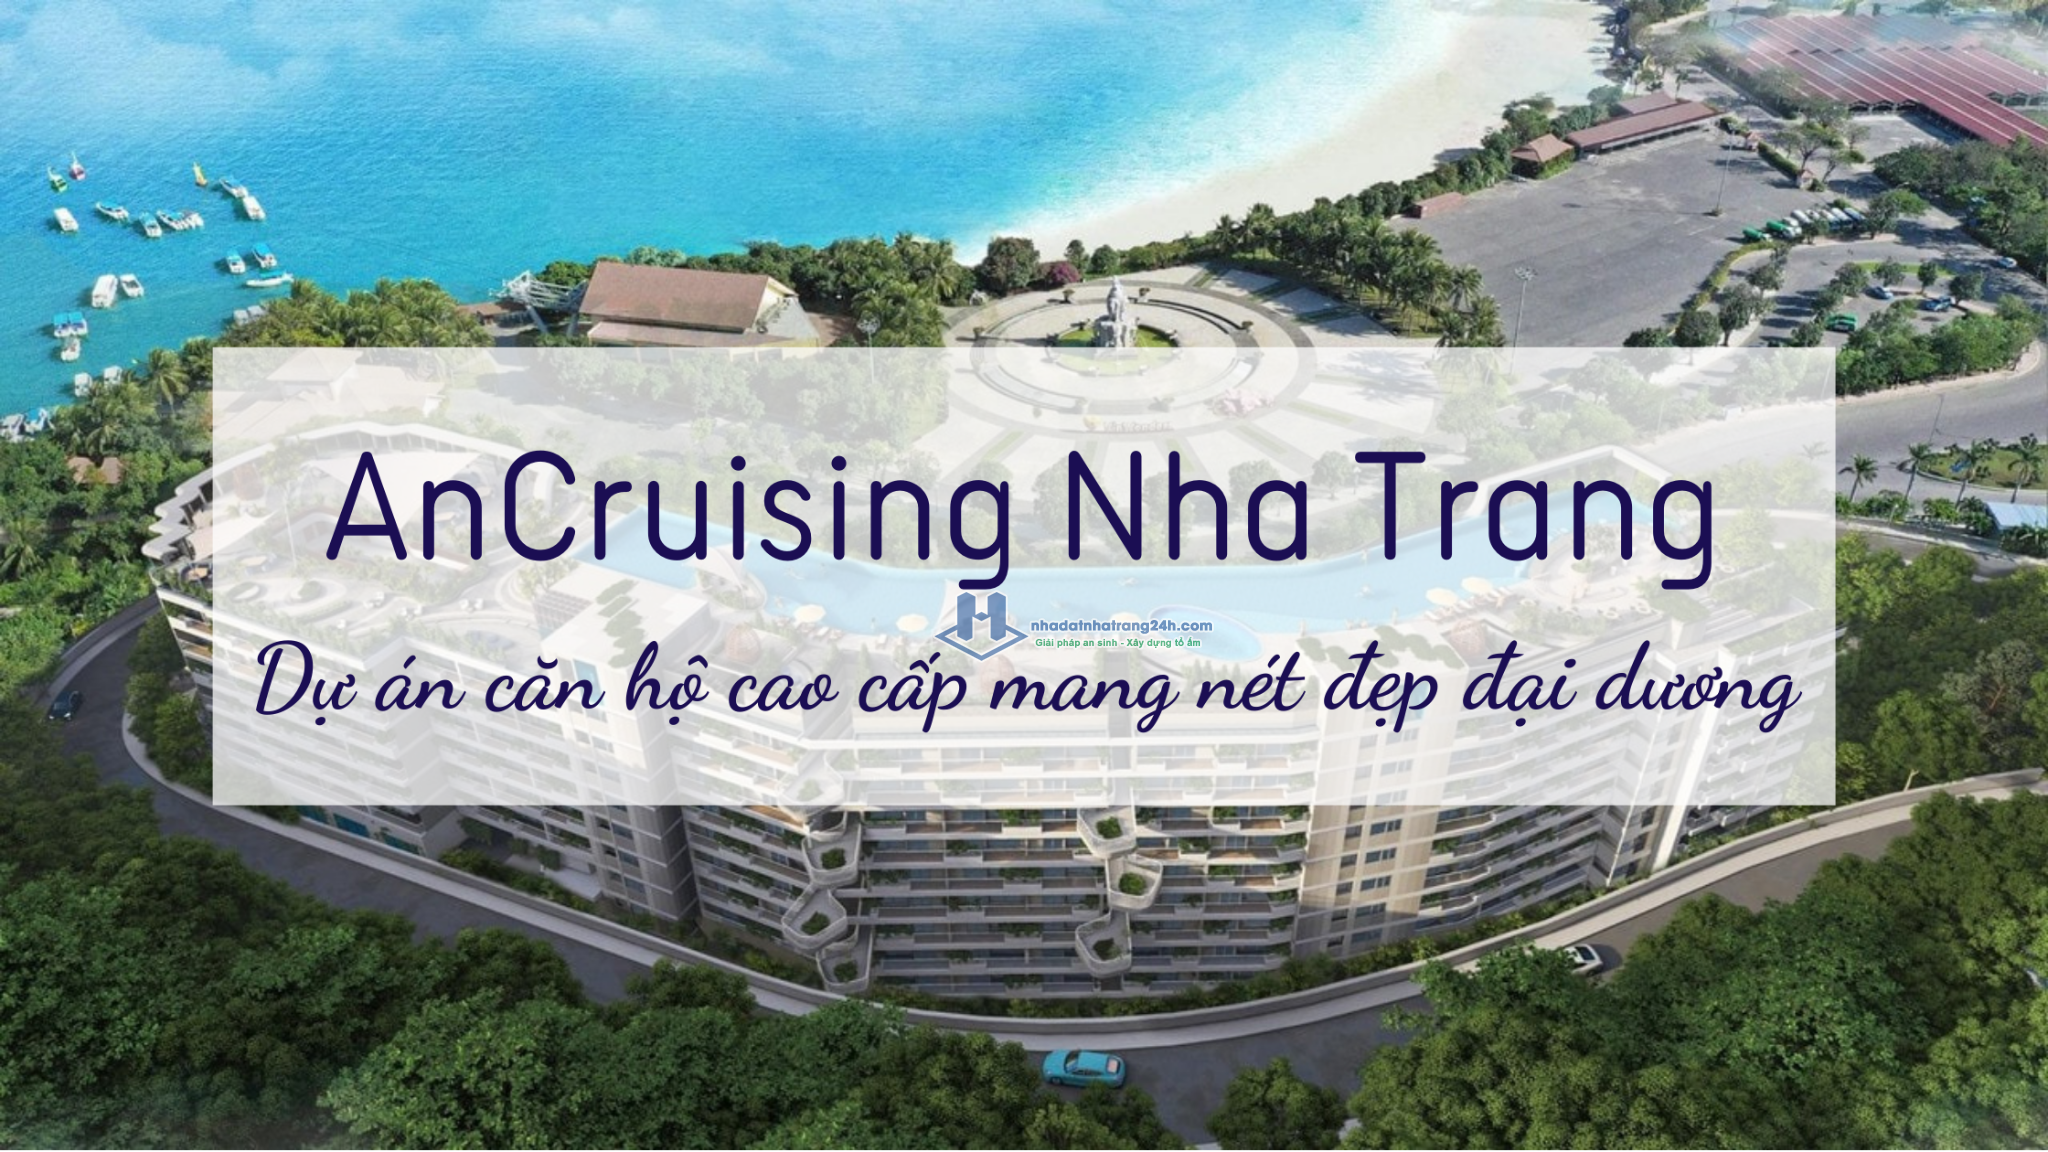 AnCruising Nha Trang – Dự án căn hộ cao cấp mang nét đẹp đại dương